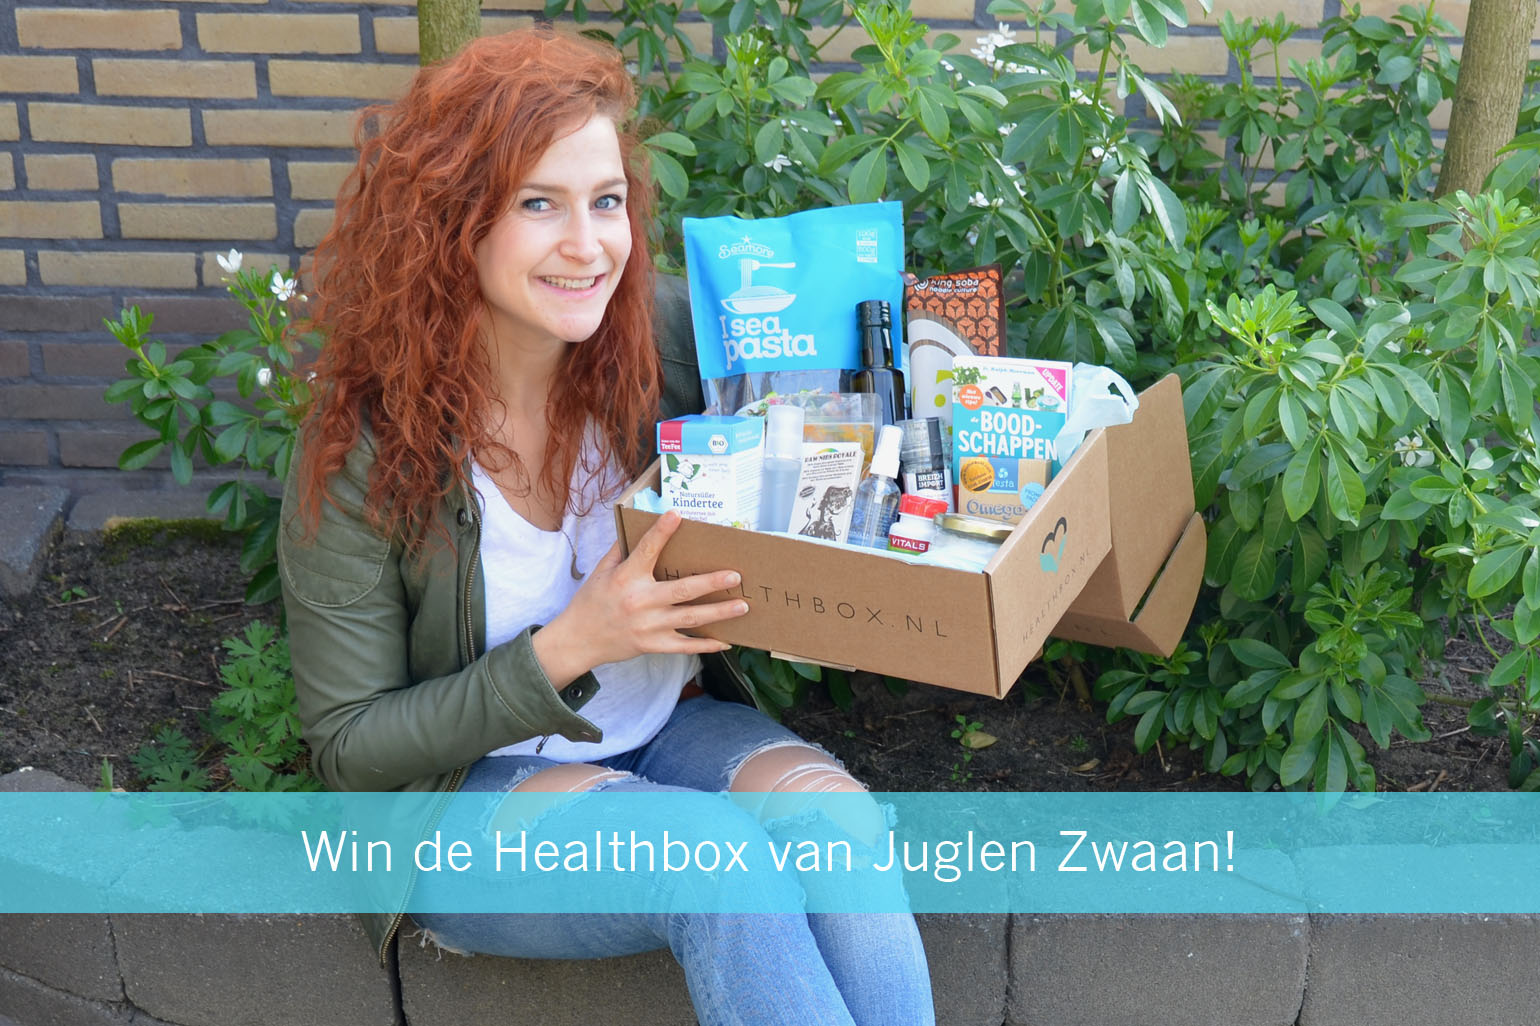 Win Healthbox Juglen Zwaan